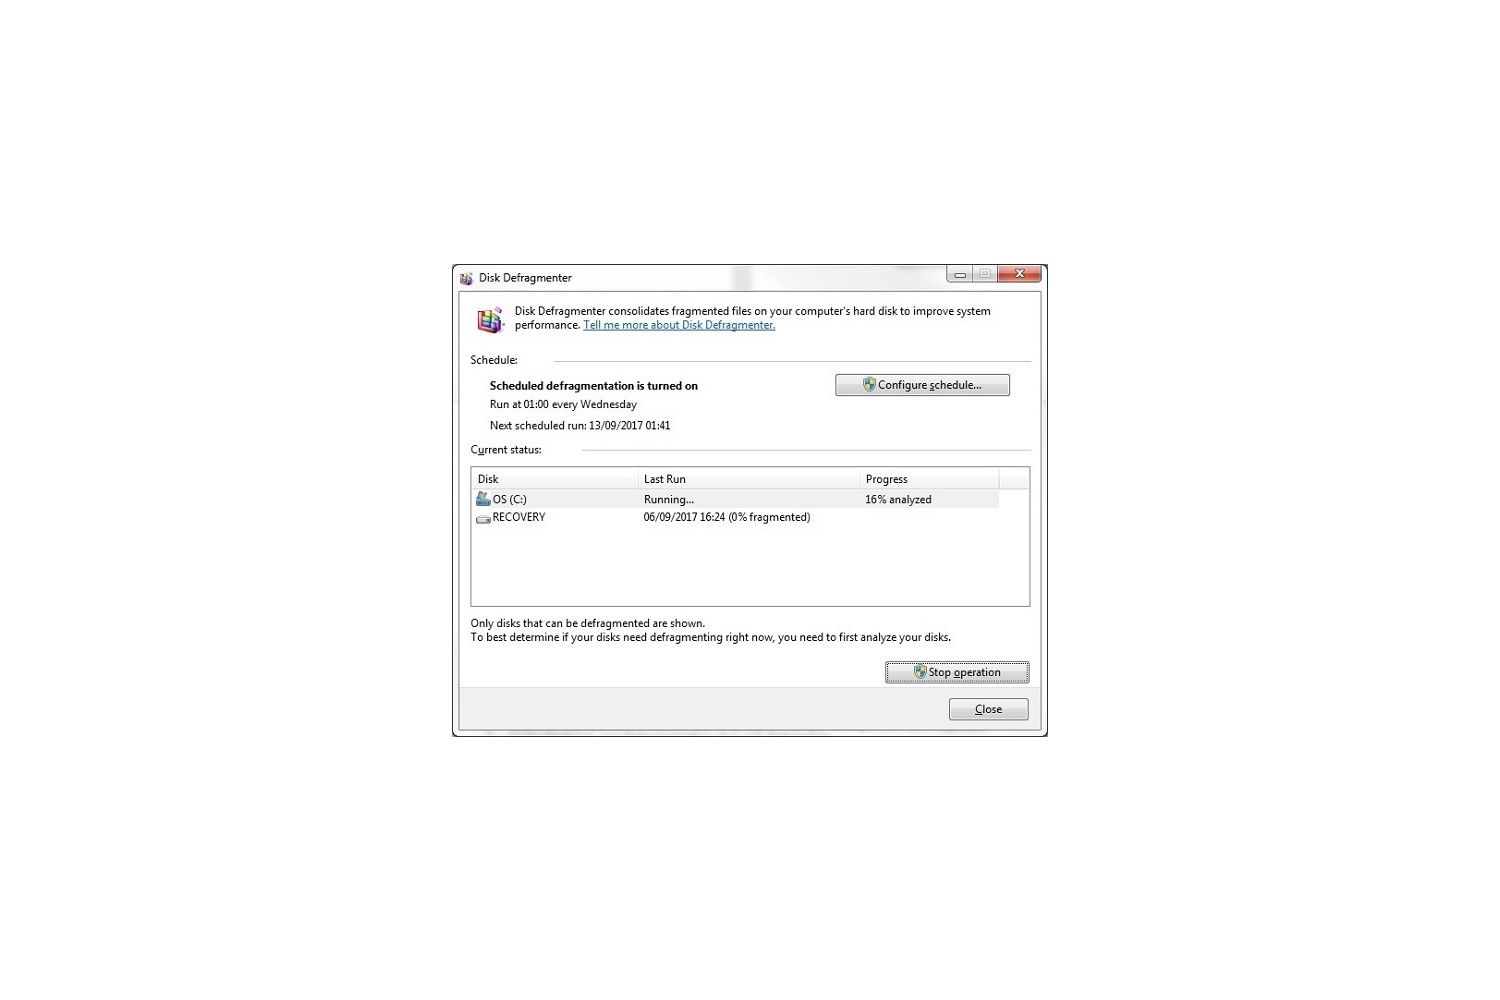 Ventana emergente del Desfragmentador de disco de Windows 7 que informa del estado actual del análisis de un informe de análisis del disco